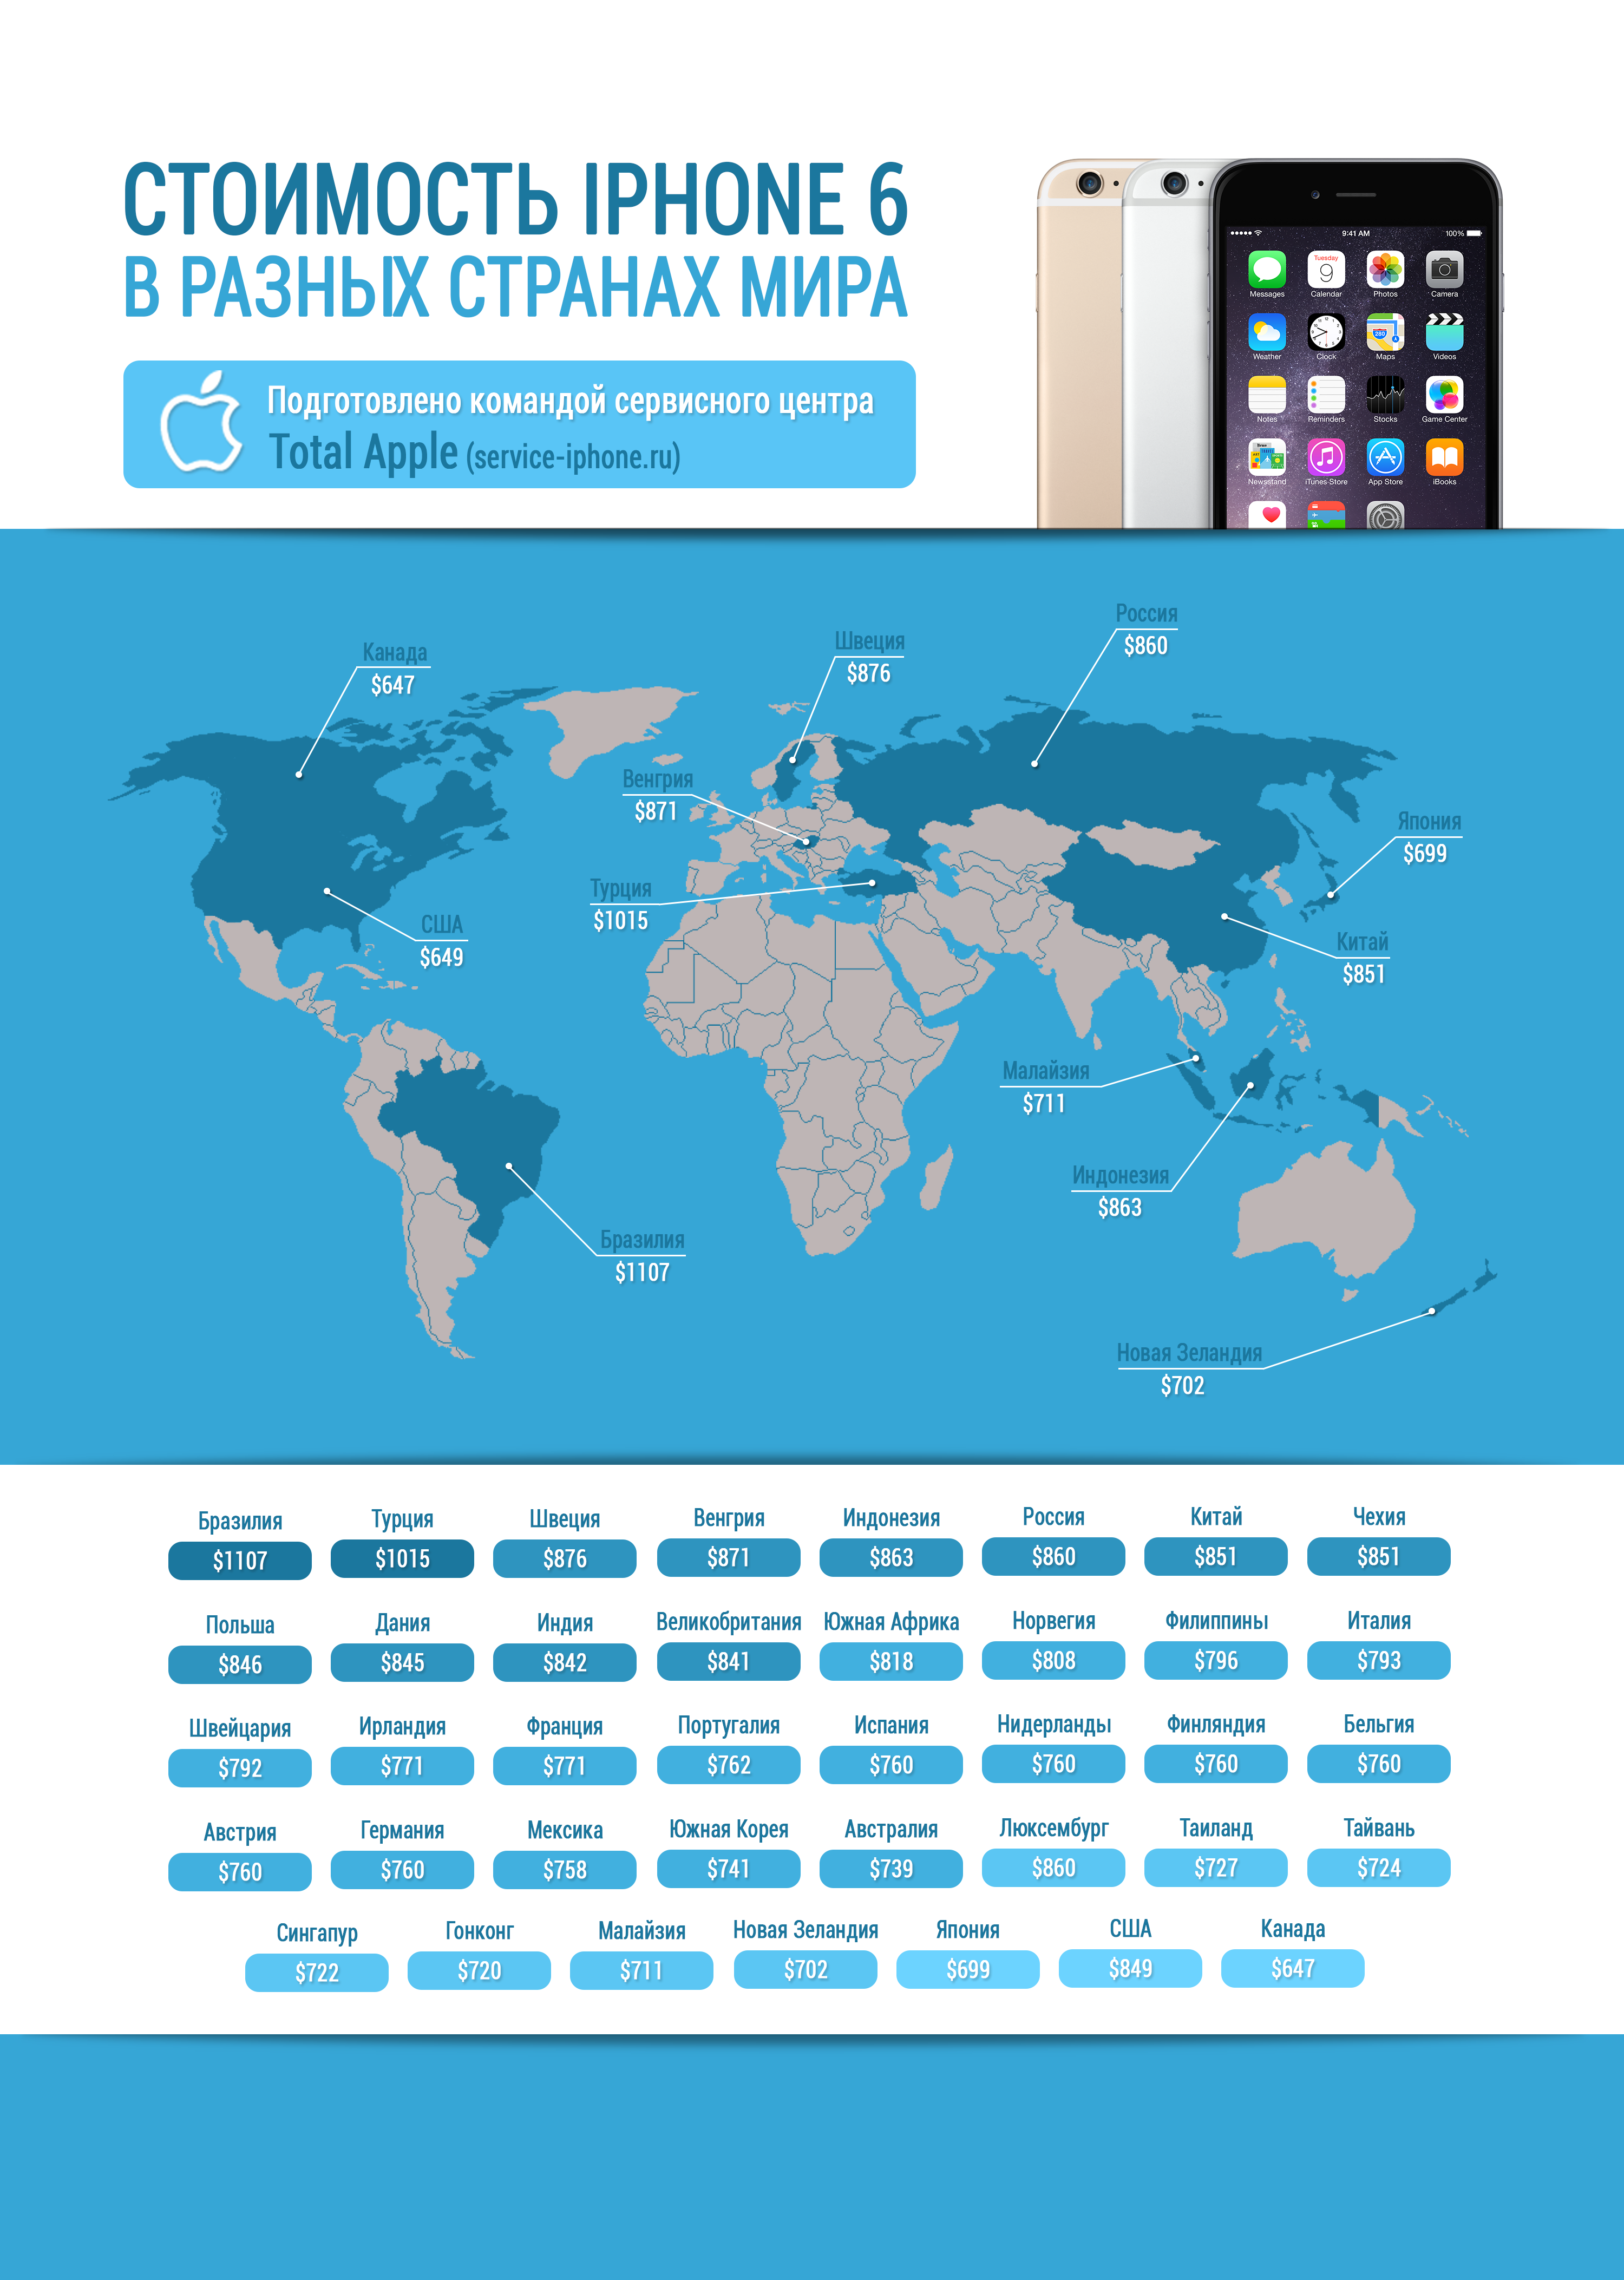 Какой страны айфон хороший. Количество проданных айфонов по странам. Айфоны в разных странах. Стоимость iphone в разных странах. Производства айфон во всех странах.